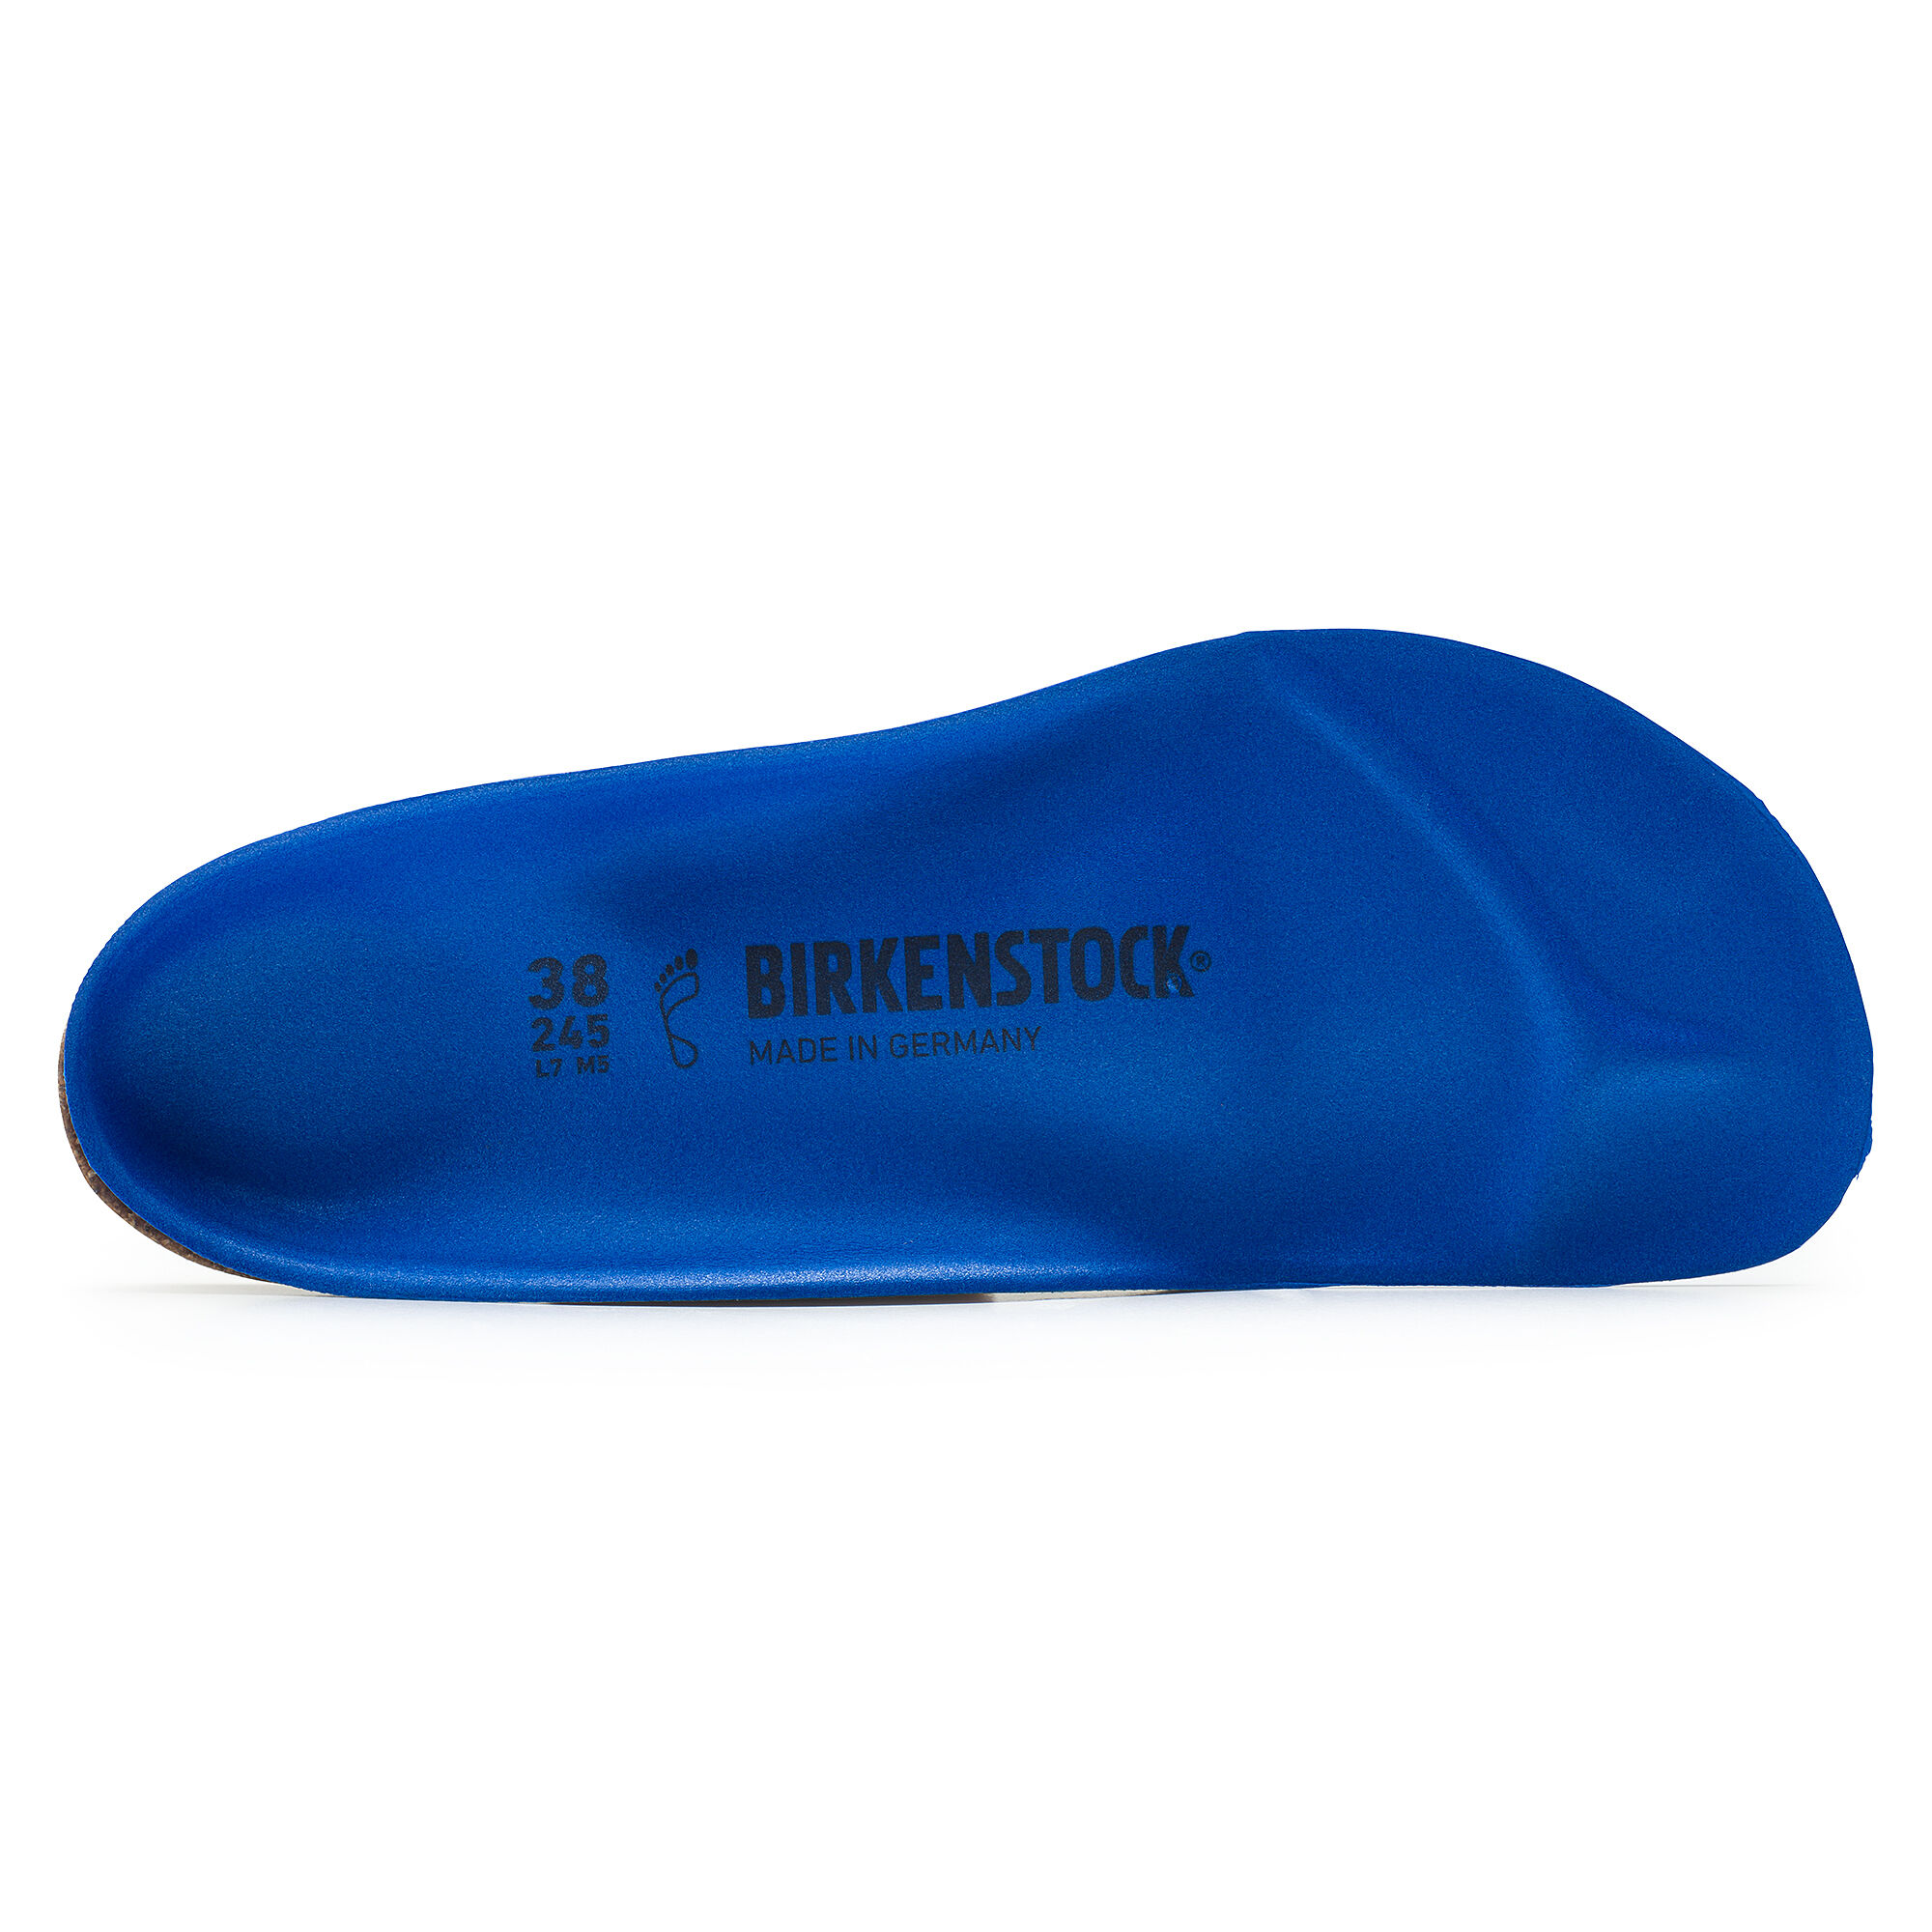 birkenstock birko sport